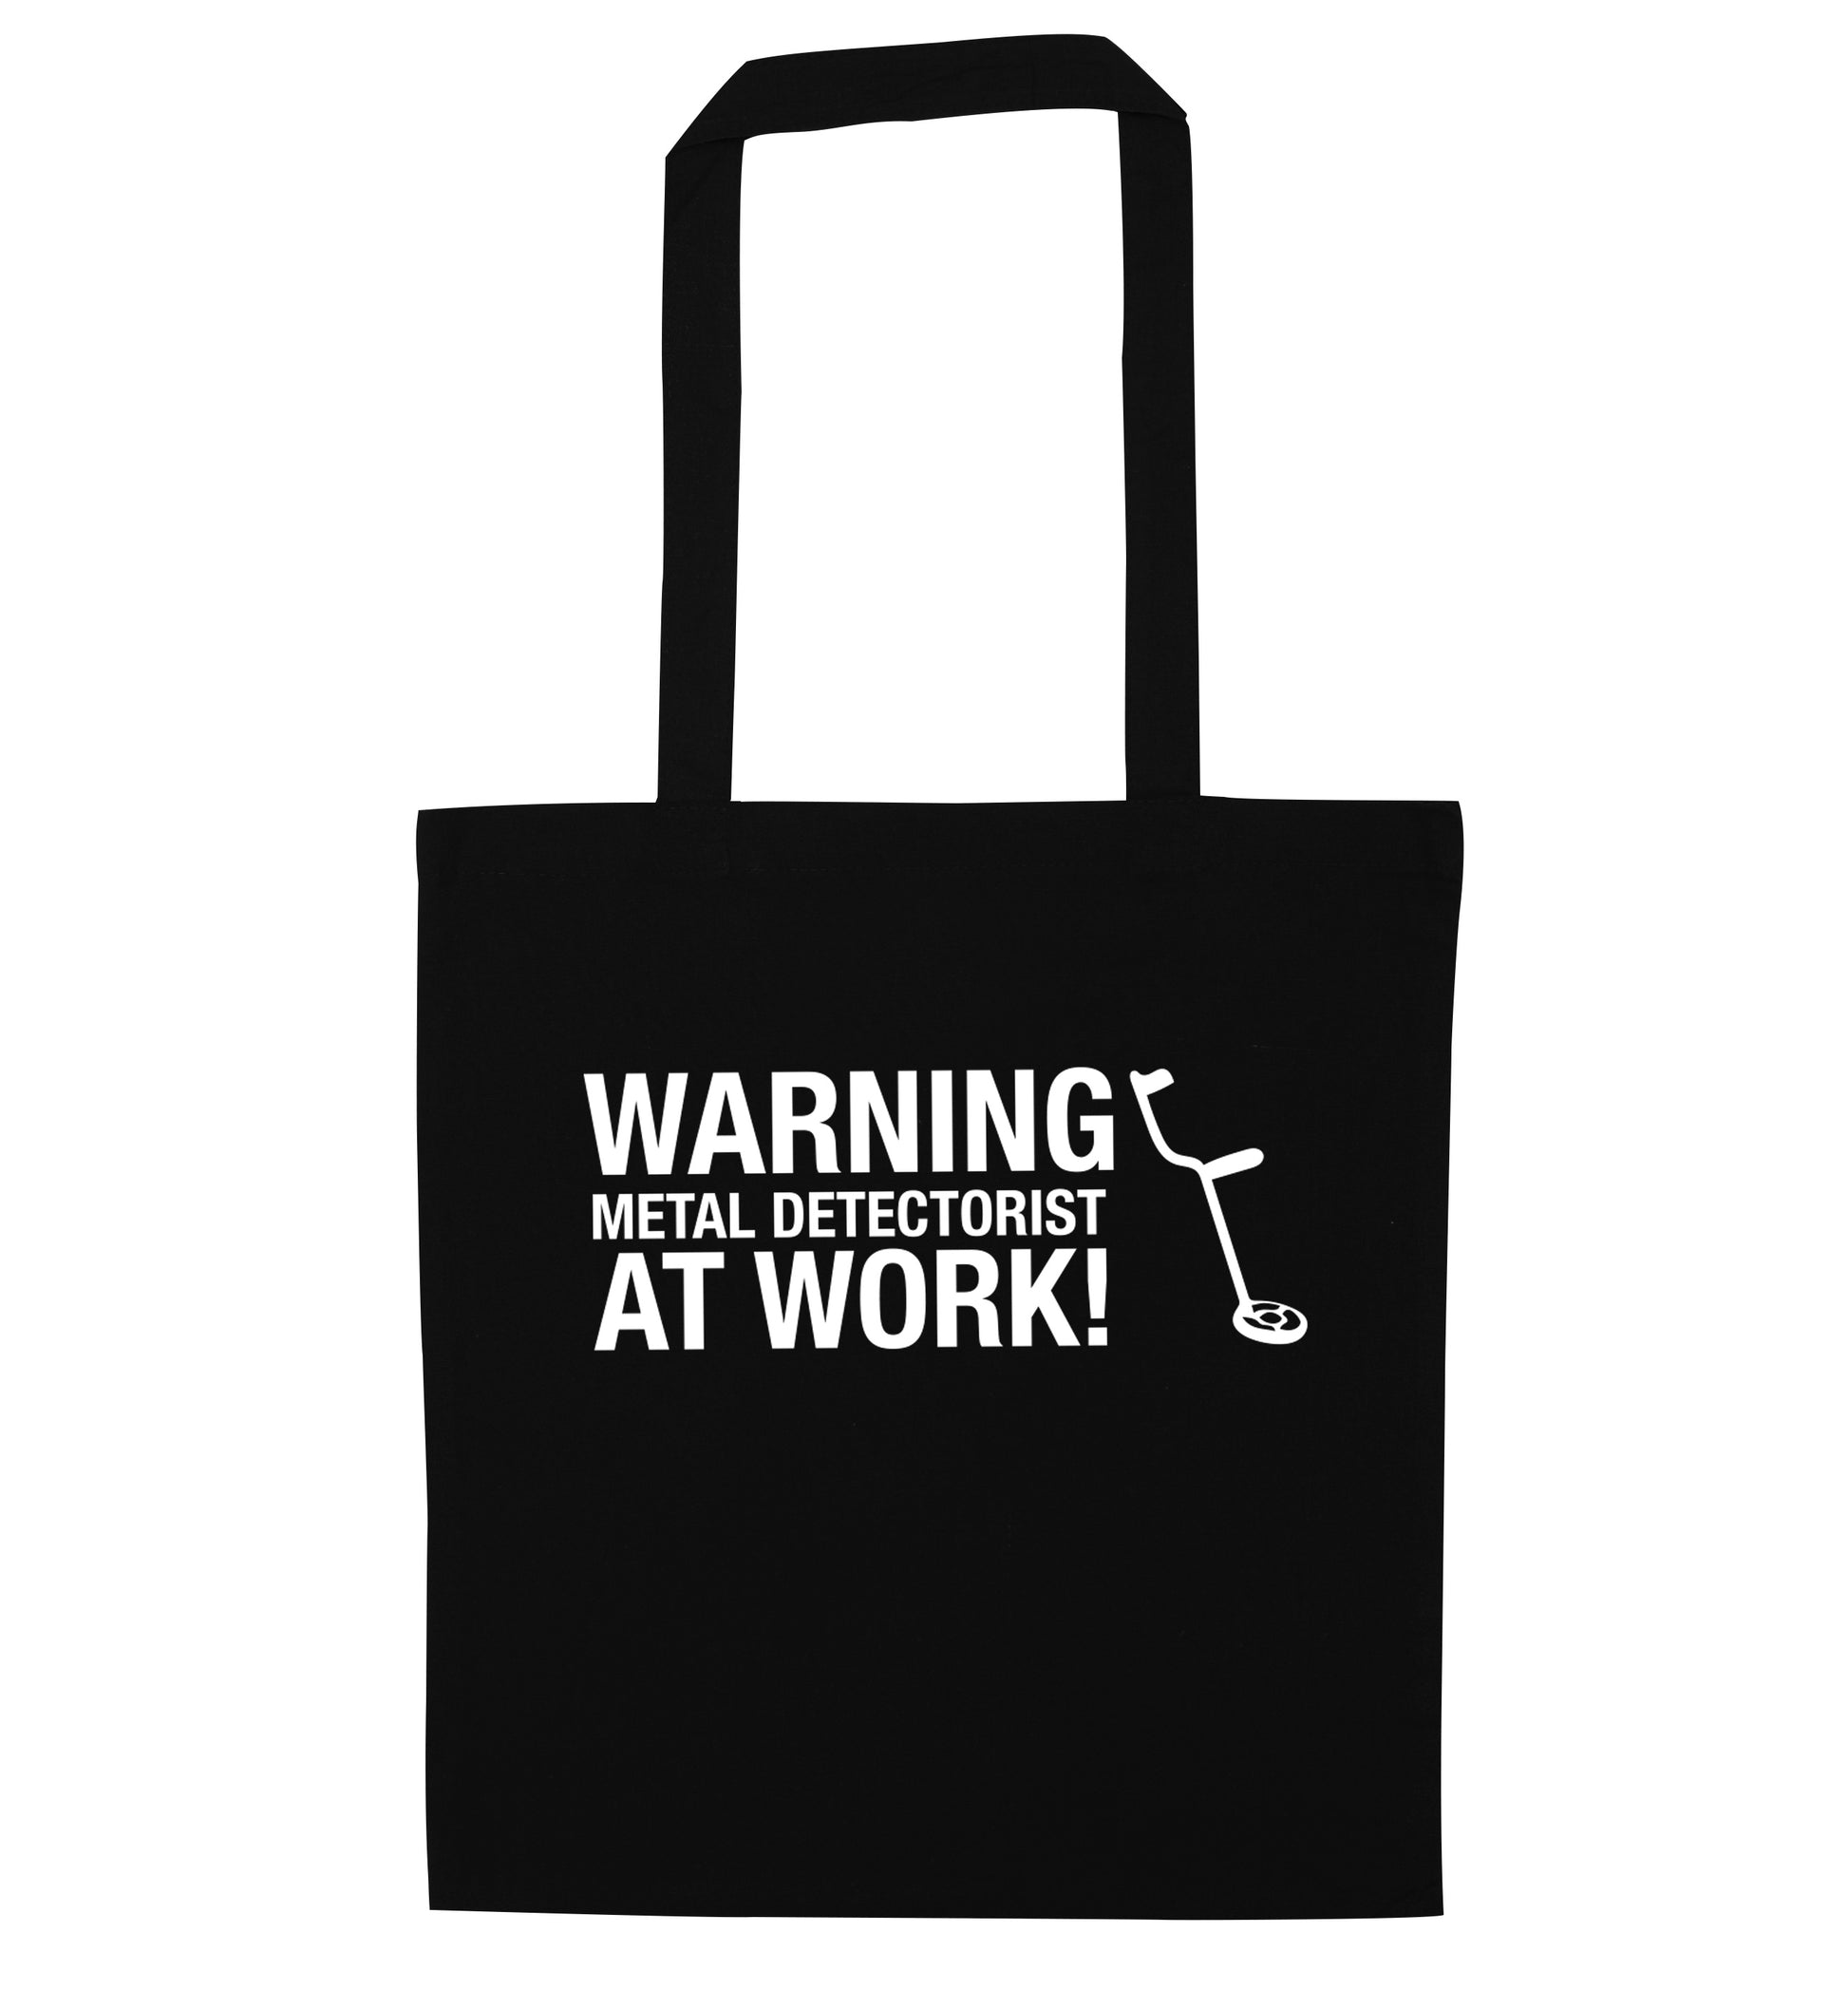 Warning metal detectorist at work! black tote bag